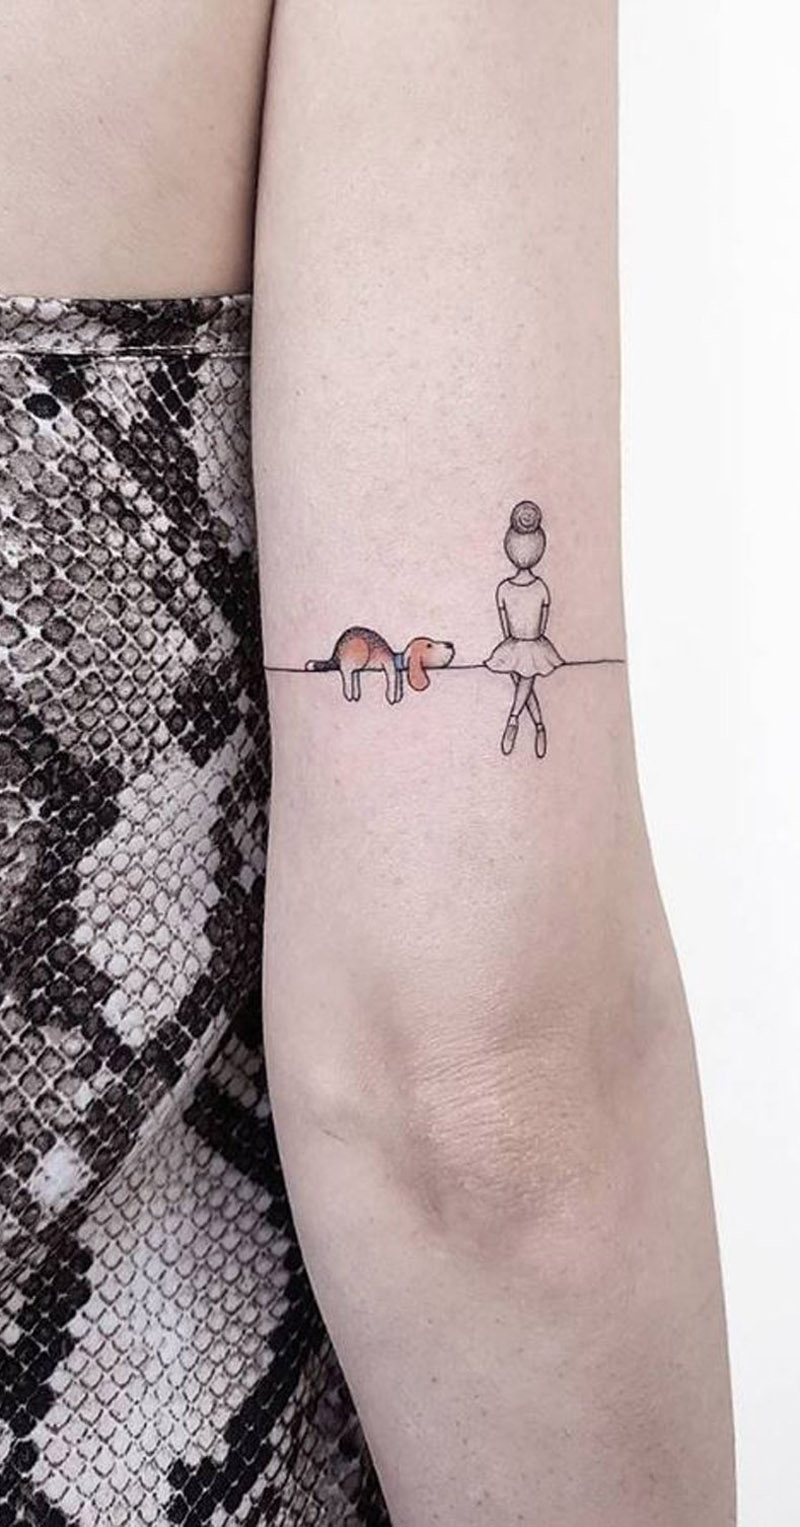 Que tal fazer uma tatuagem de cachorro? Confira essas ideias!